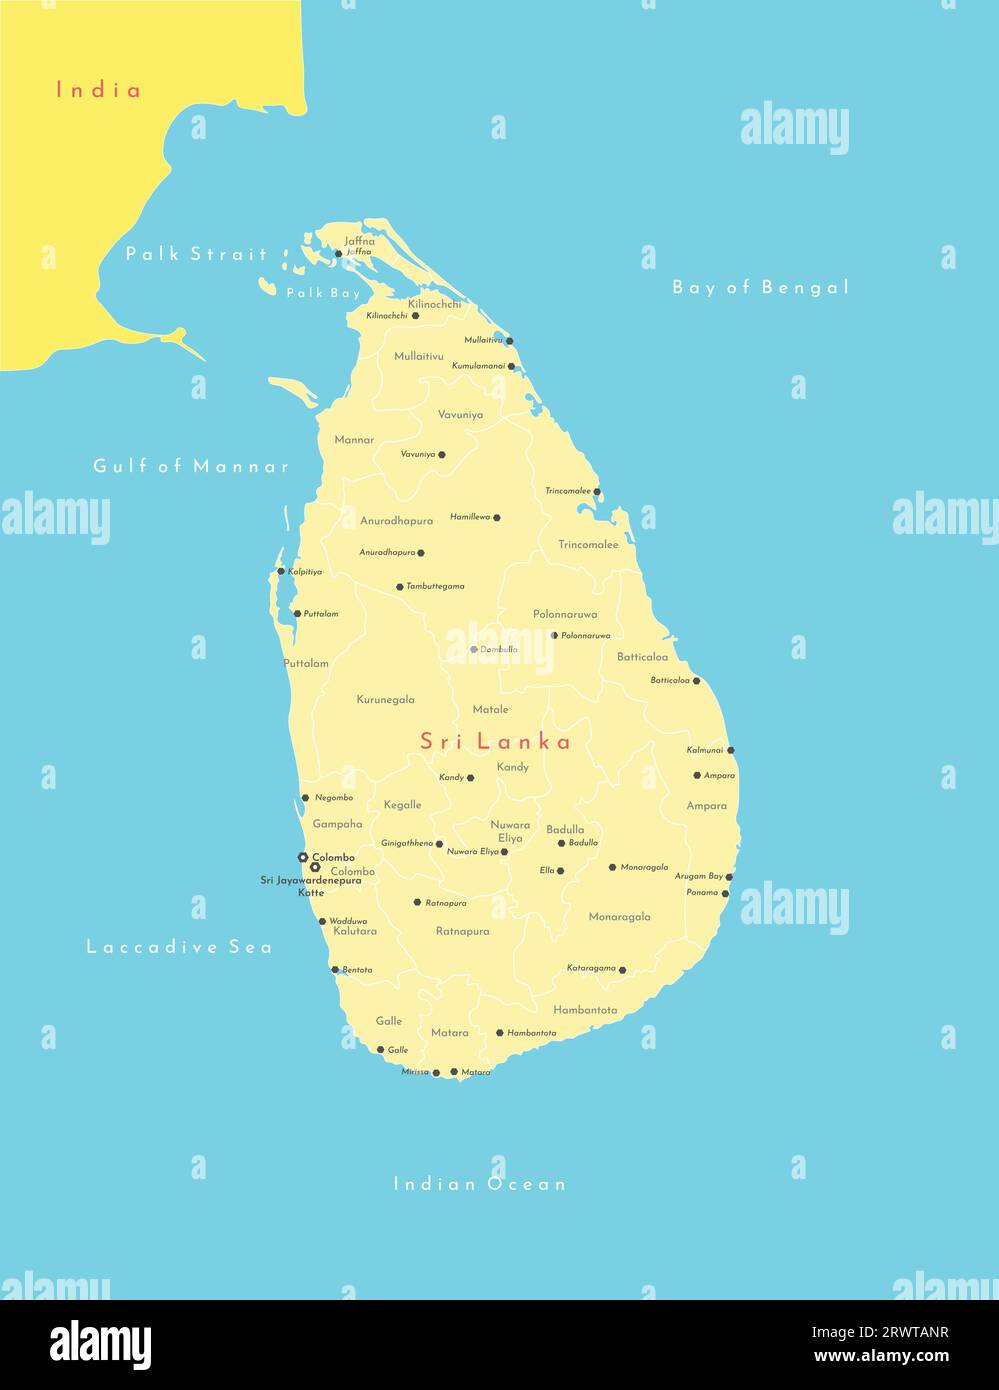 Vector illustration moderne. Carte géographique simplifiée du Sri Lanka (ana Inde partiellement). Fond bleu de l'océan Indien, baie du Bengale. Noms de Illustration de Vecteur